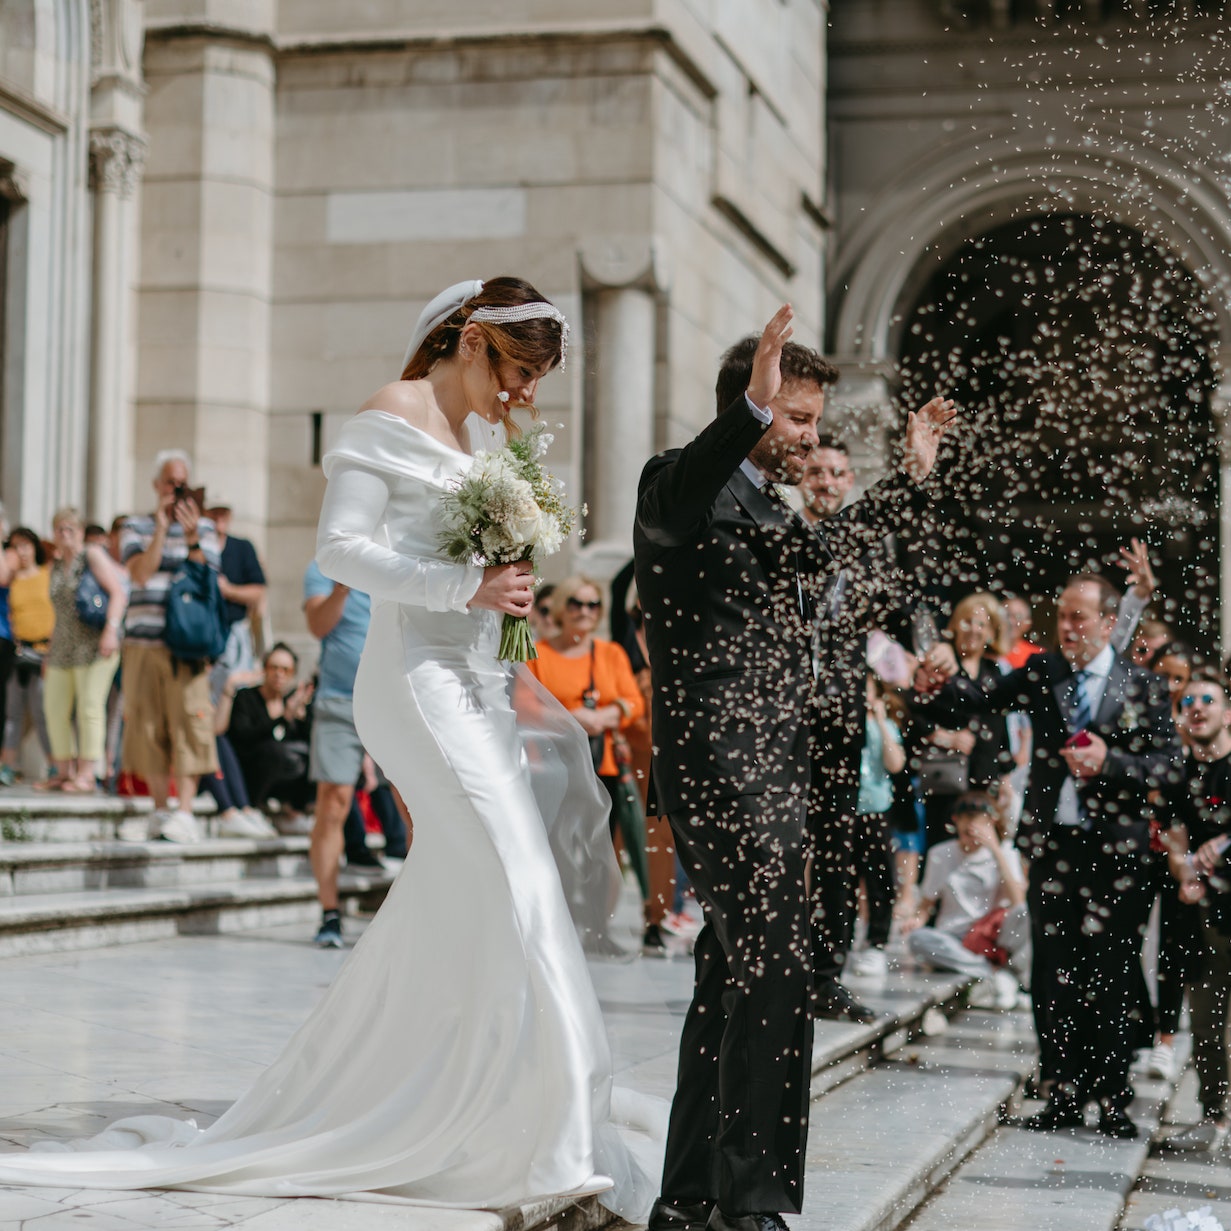 Il matrimonio a Napoli della stylist Roberta Astarita. La cerimonia nel Duomo, la festa sul mare e l'abito da sposa sartoriale